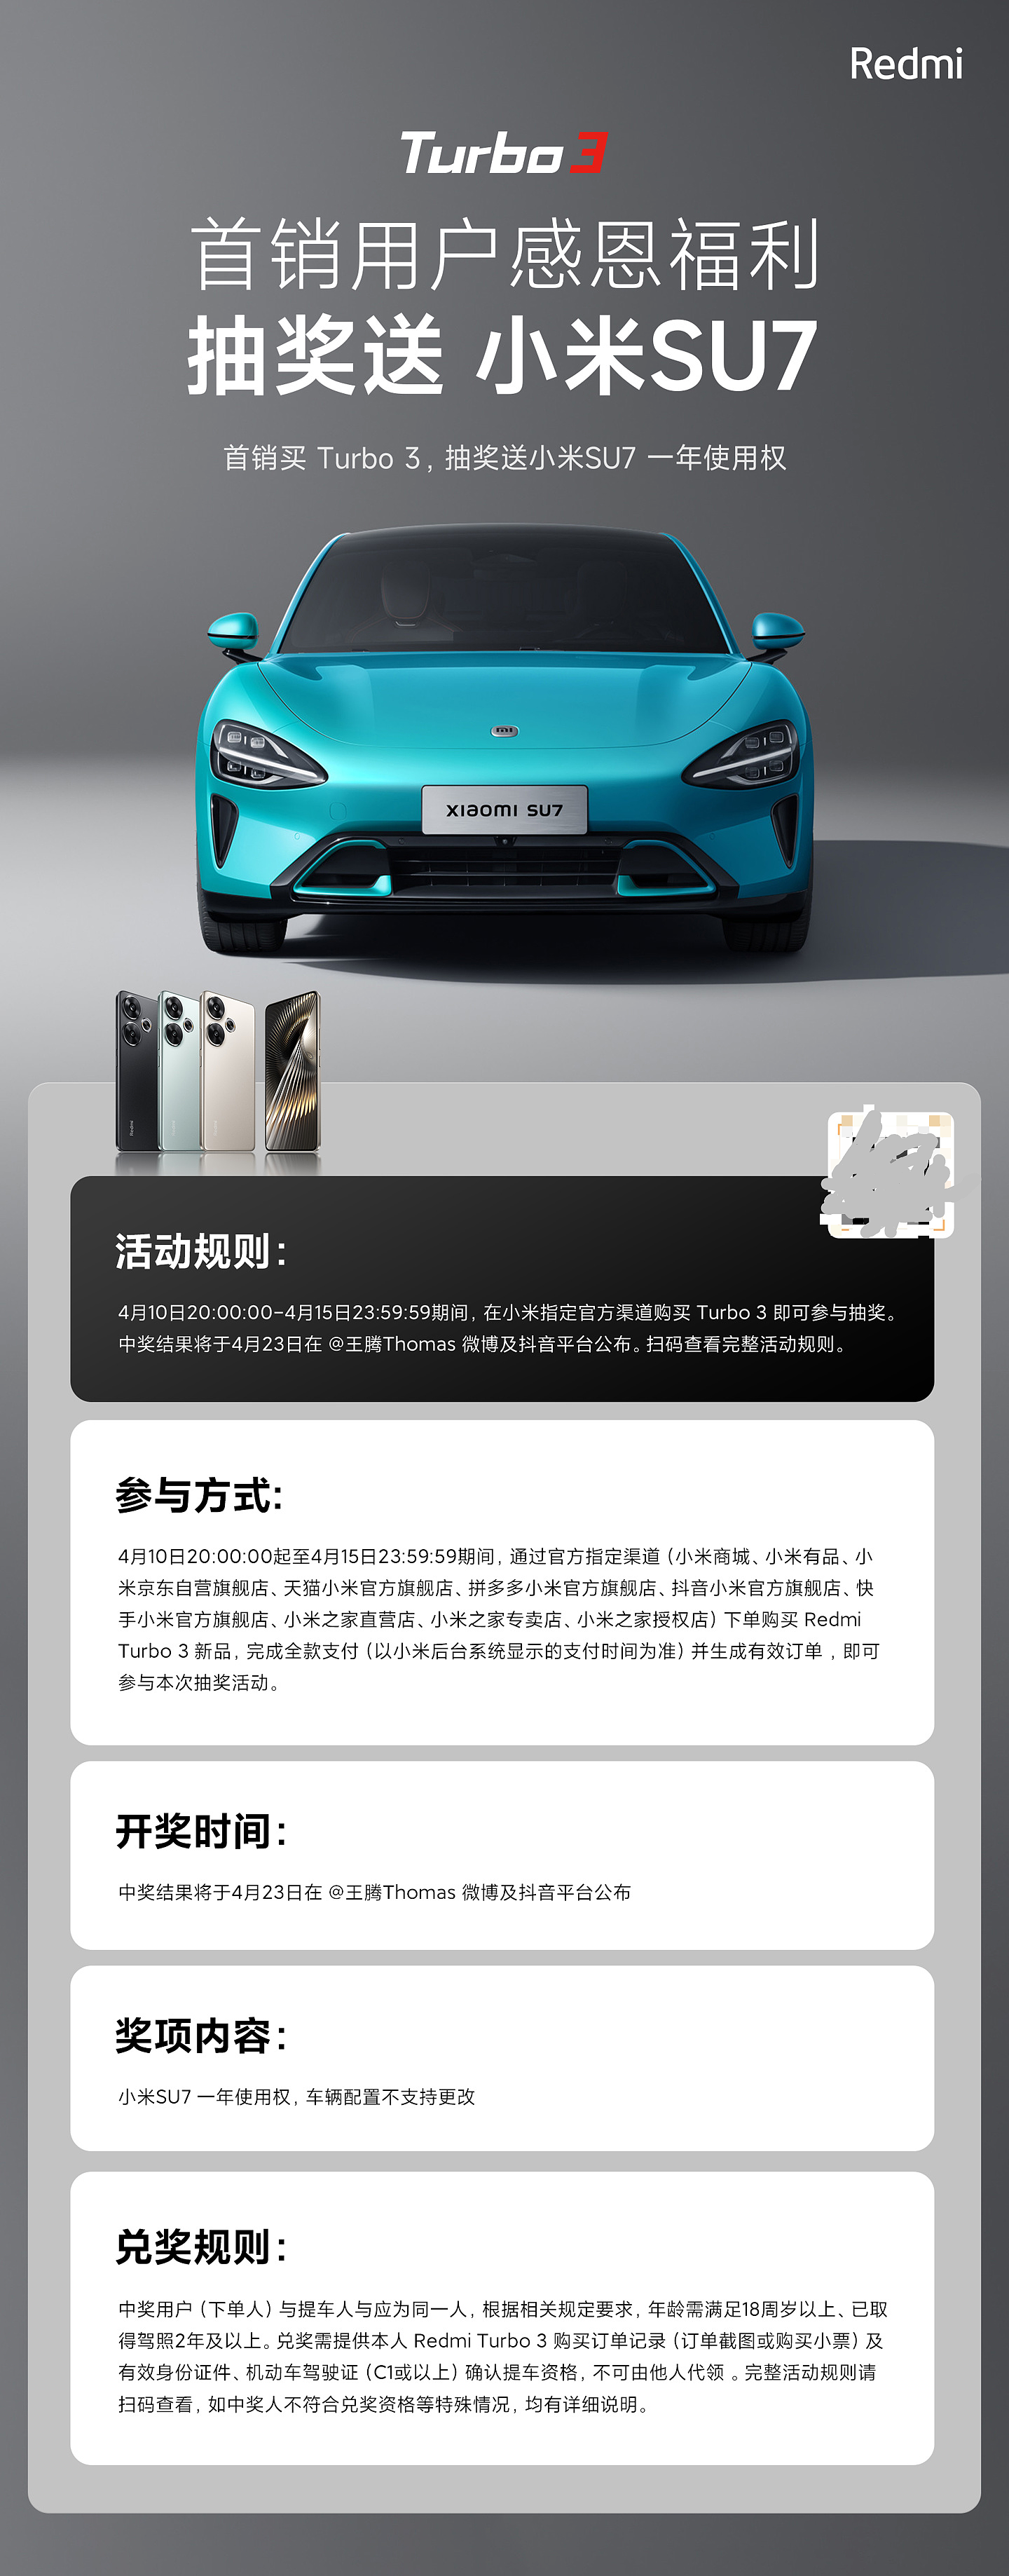 Redmi Turbo 3 手机首销目标达成，王腾抽送小米 SU7 一年使用权 - 4